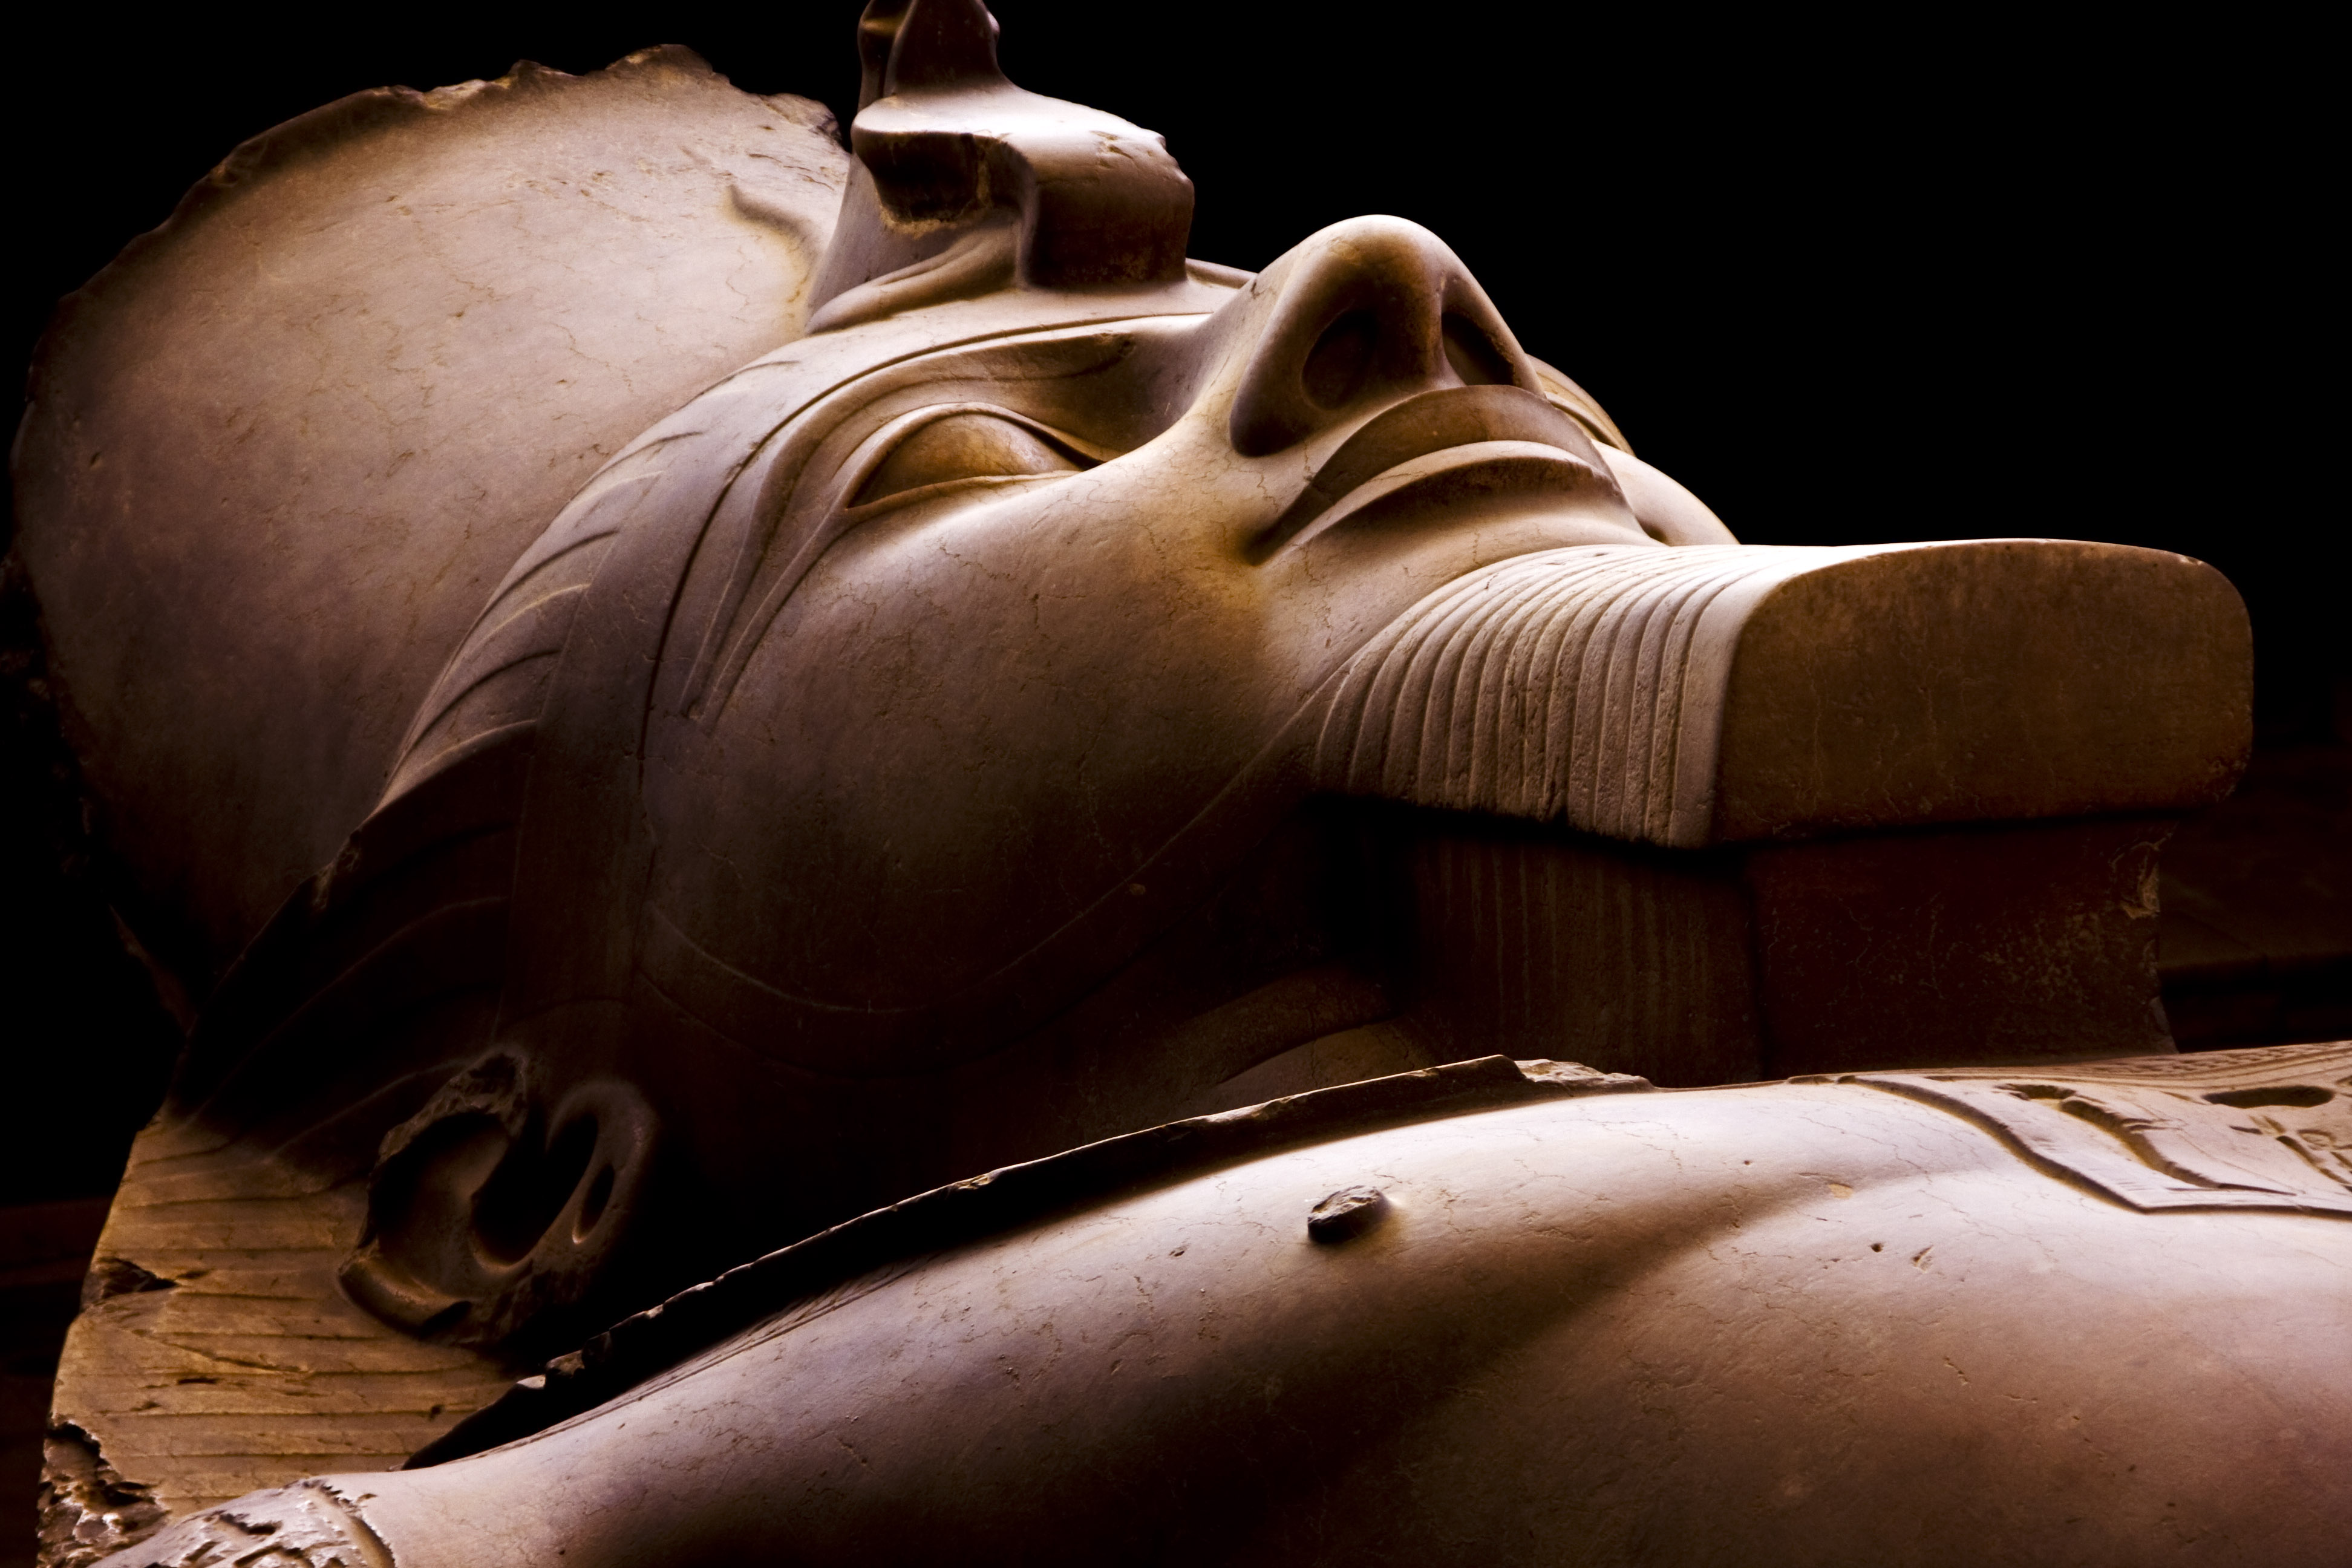 Flickr   ids.photos   cairo sculptures  egypt.  1 